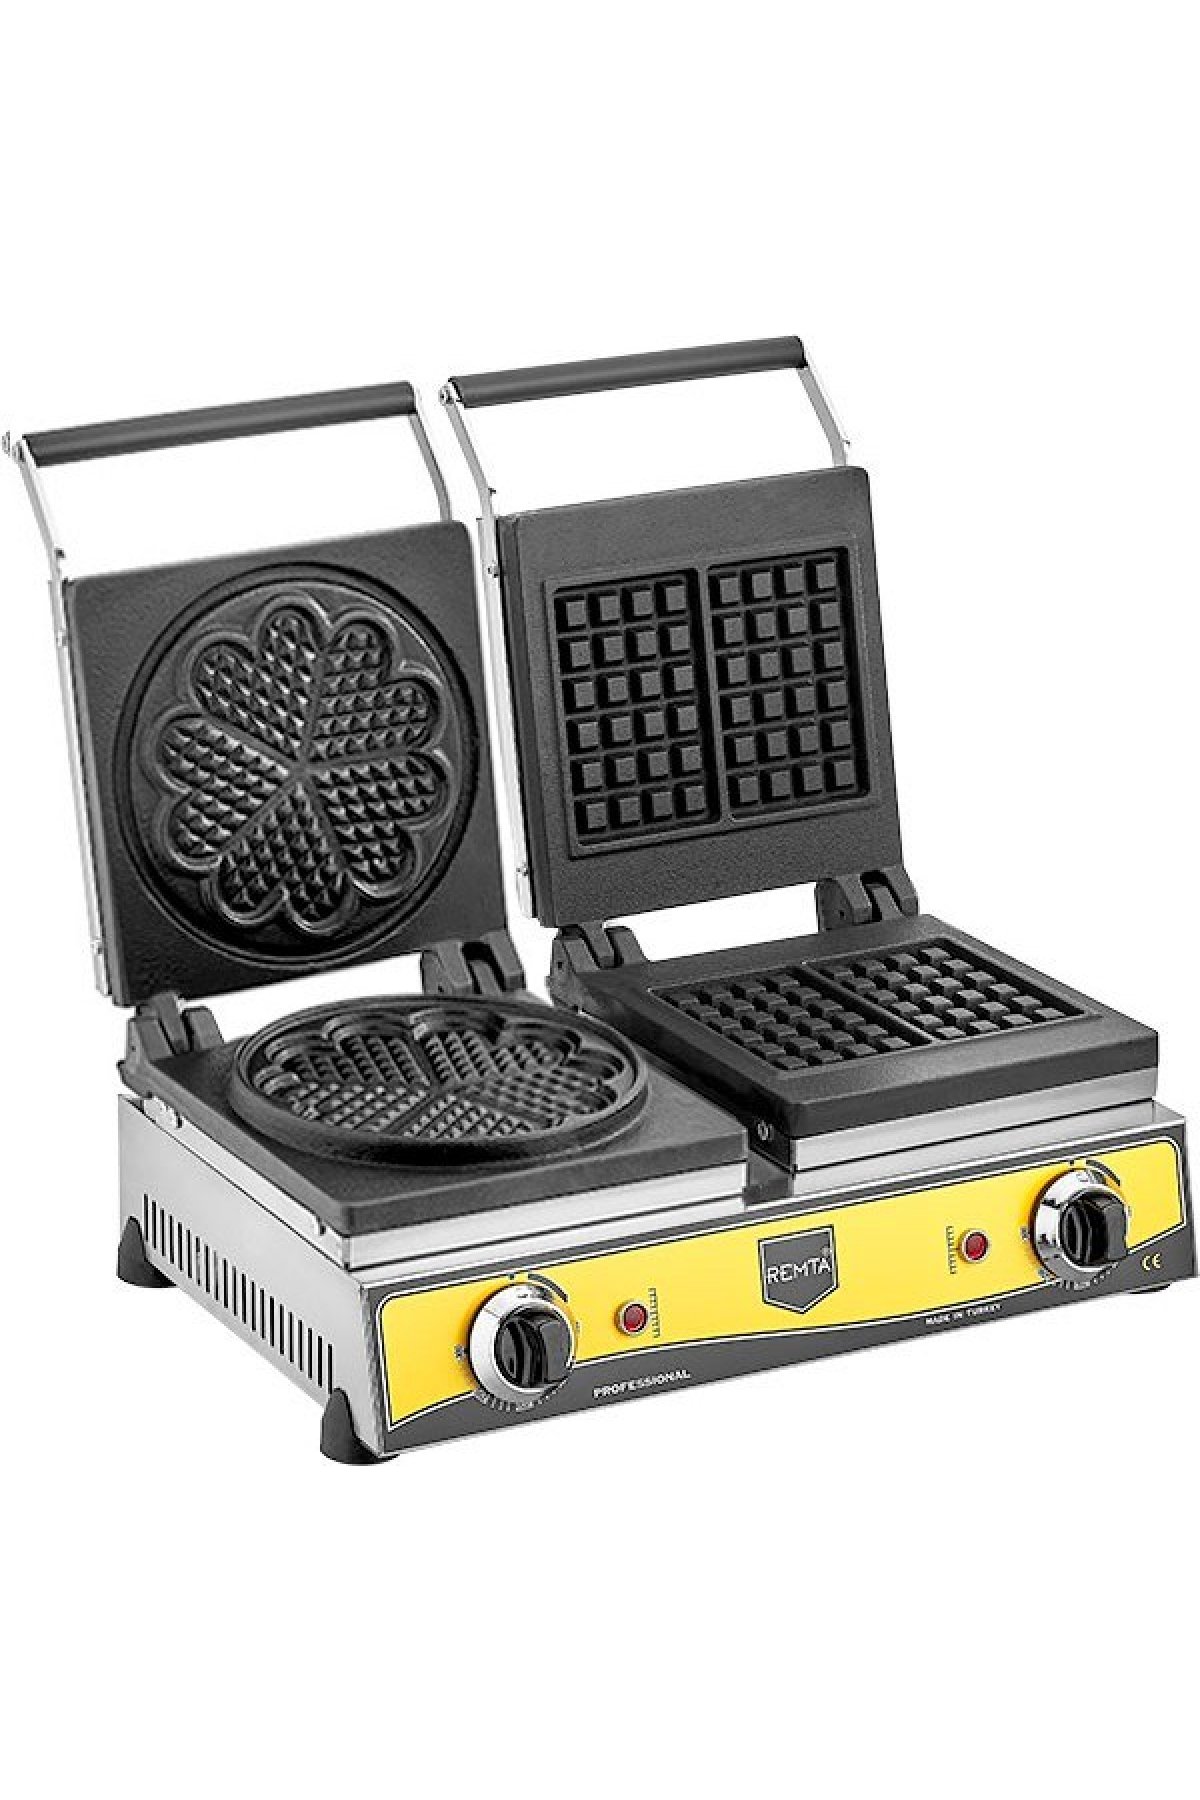 Remta Çiftli Kare + Çiçek Model (21 çap) Waffle Makinası Elektrikli - W21